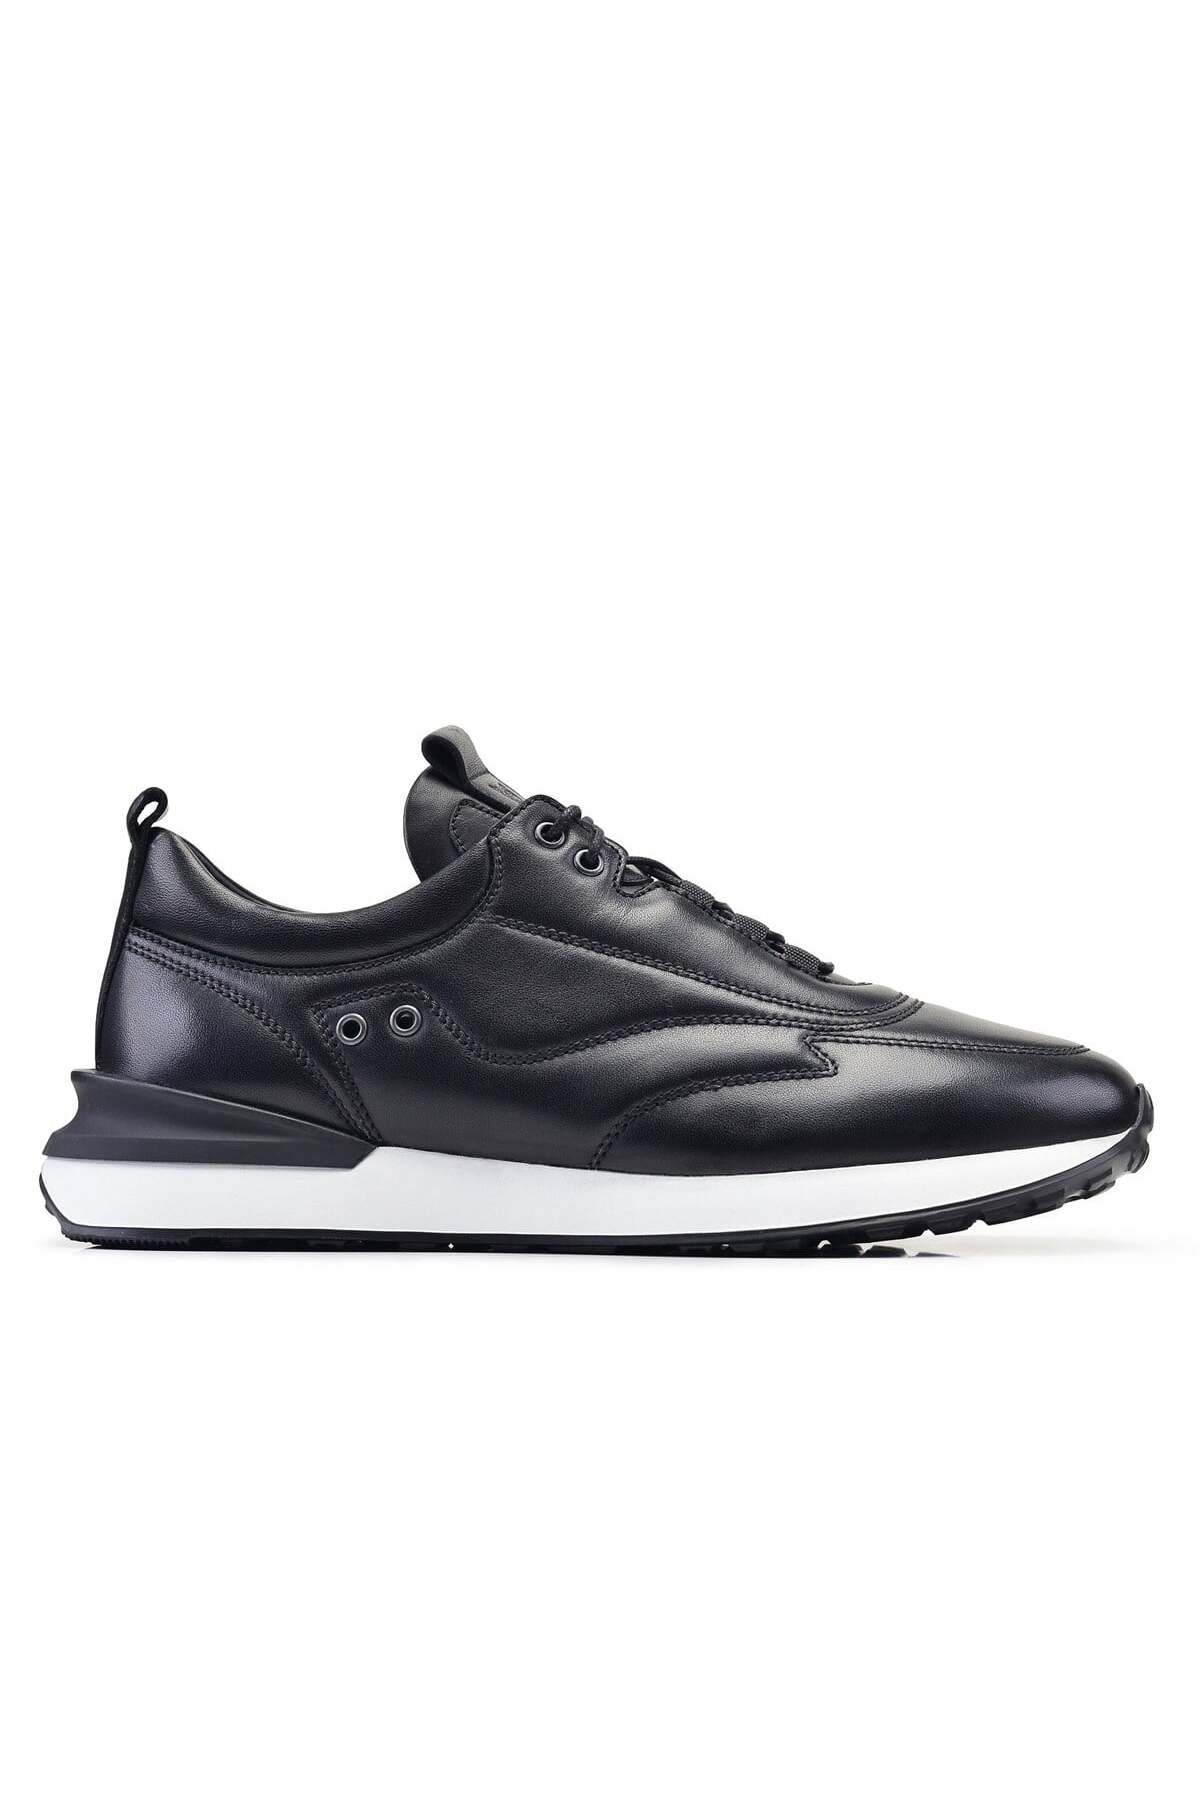 Nevzat Onay Siyah Sneaker Erkek Ayakkabı -12661-